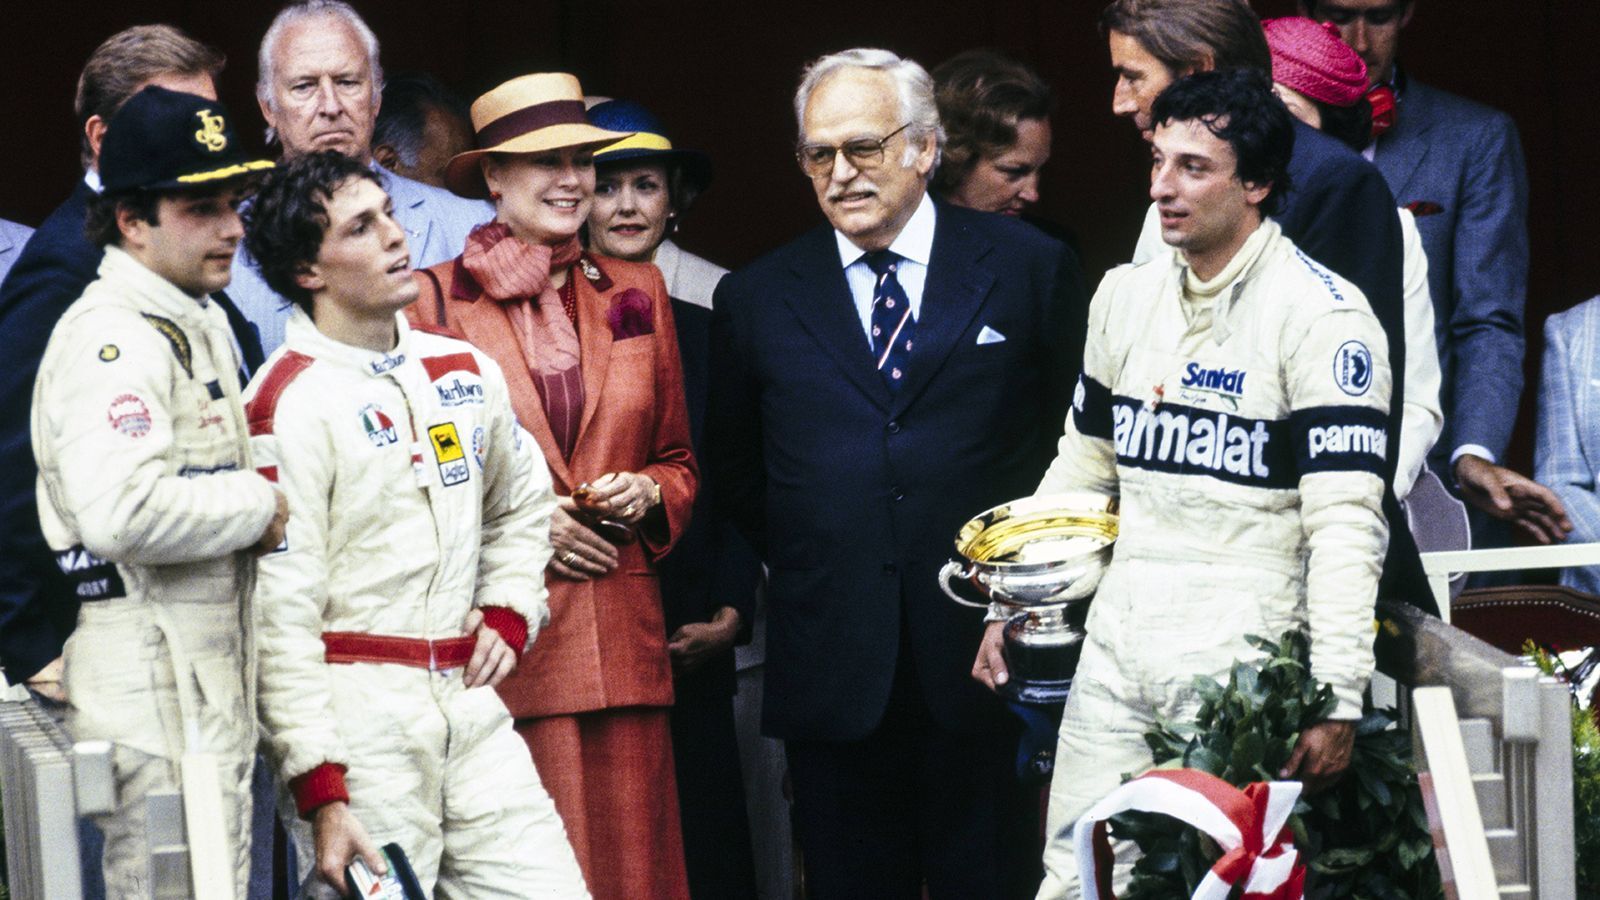 
                <strong>1982: Scheinbar keiner will gewinnen</strong><br>
                An der Spitze des Großen Preises von Monaco war es im Jahr 1982 wie verflucht. Erst führte Serien-Weltmeister Alain Prost bis in die 74. und drittletzte Runde, dann krachte der Franzose in die Leitplanke. Riccardo Patrese übernahm die Führung, drehte sich allerdings kurz Zeit später und würgte seinen Motor ab. Neuer Führender war Didier Pironi, doch in der Tunnelausfahrt ging ihm der Sprit aus. Auf Platz eins fuhr nun Andrea de Cesaris, doch auch sein Tank war Augenblicke später leer. Derek Daly führte das Rennen dann an, doch nach einer Kollision mit der Leitplanke musste auch er aufgeben. Es gewann Patrese, der seinen Motor wieder zum Laufen brachte und als Erster durch das Ziel fuhr. Pironi und de Cesaris wurden als Zweiter und Dritter gewertet, weil sie eine ausreichende Distanz zurückgelegt hatten. 
              